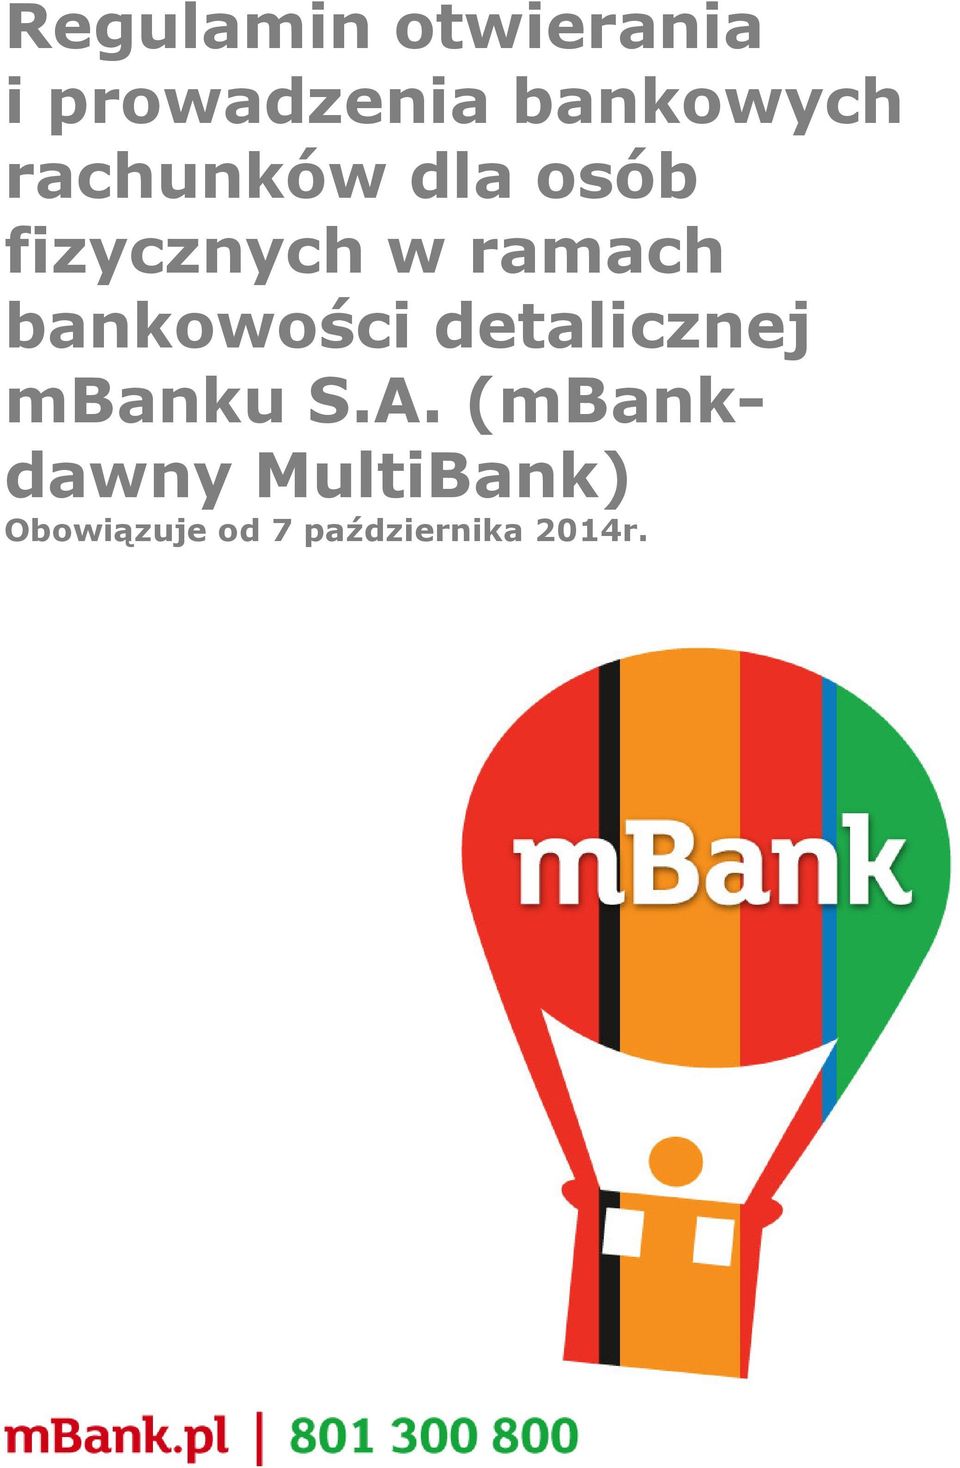 bankowości detalicznej mbanku S.A.